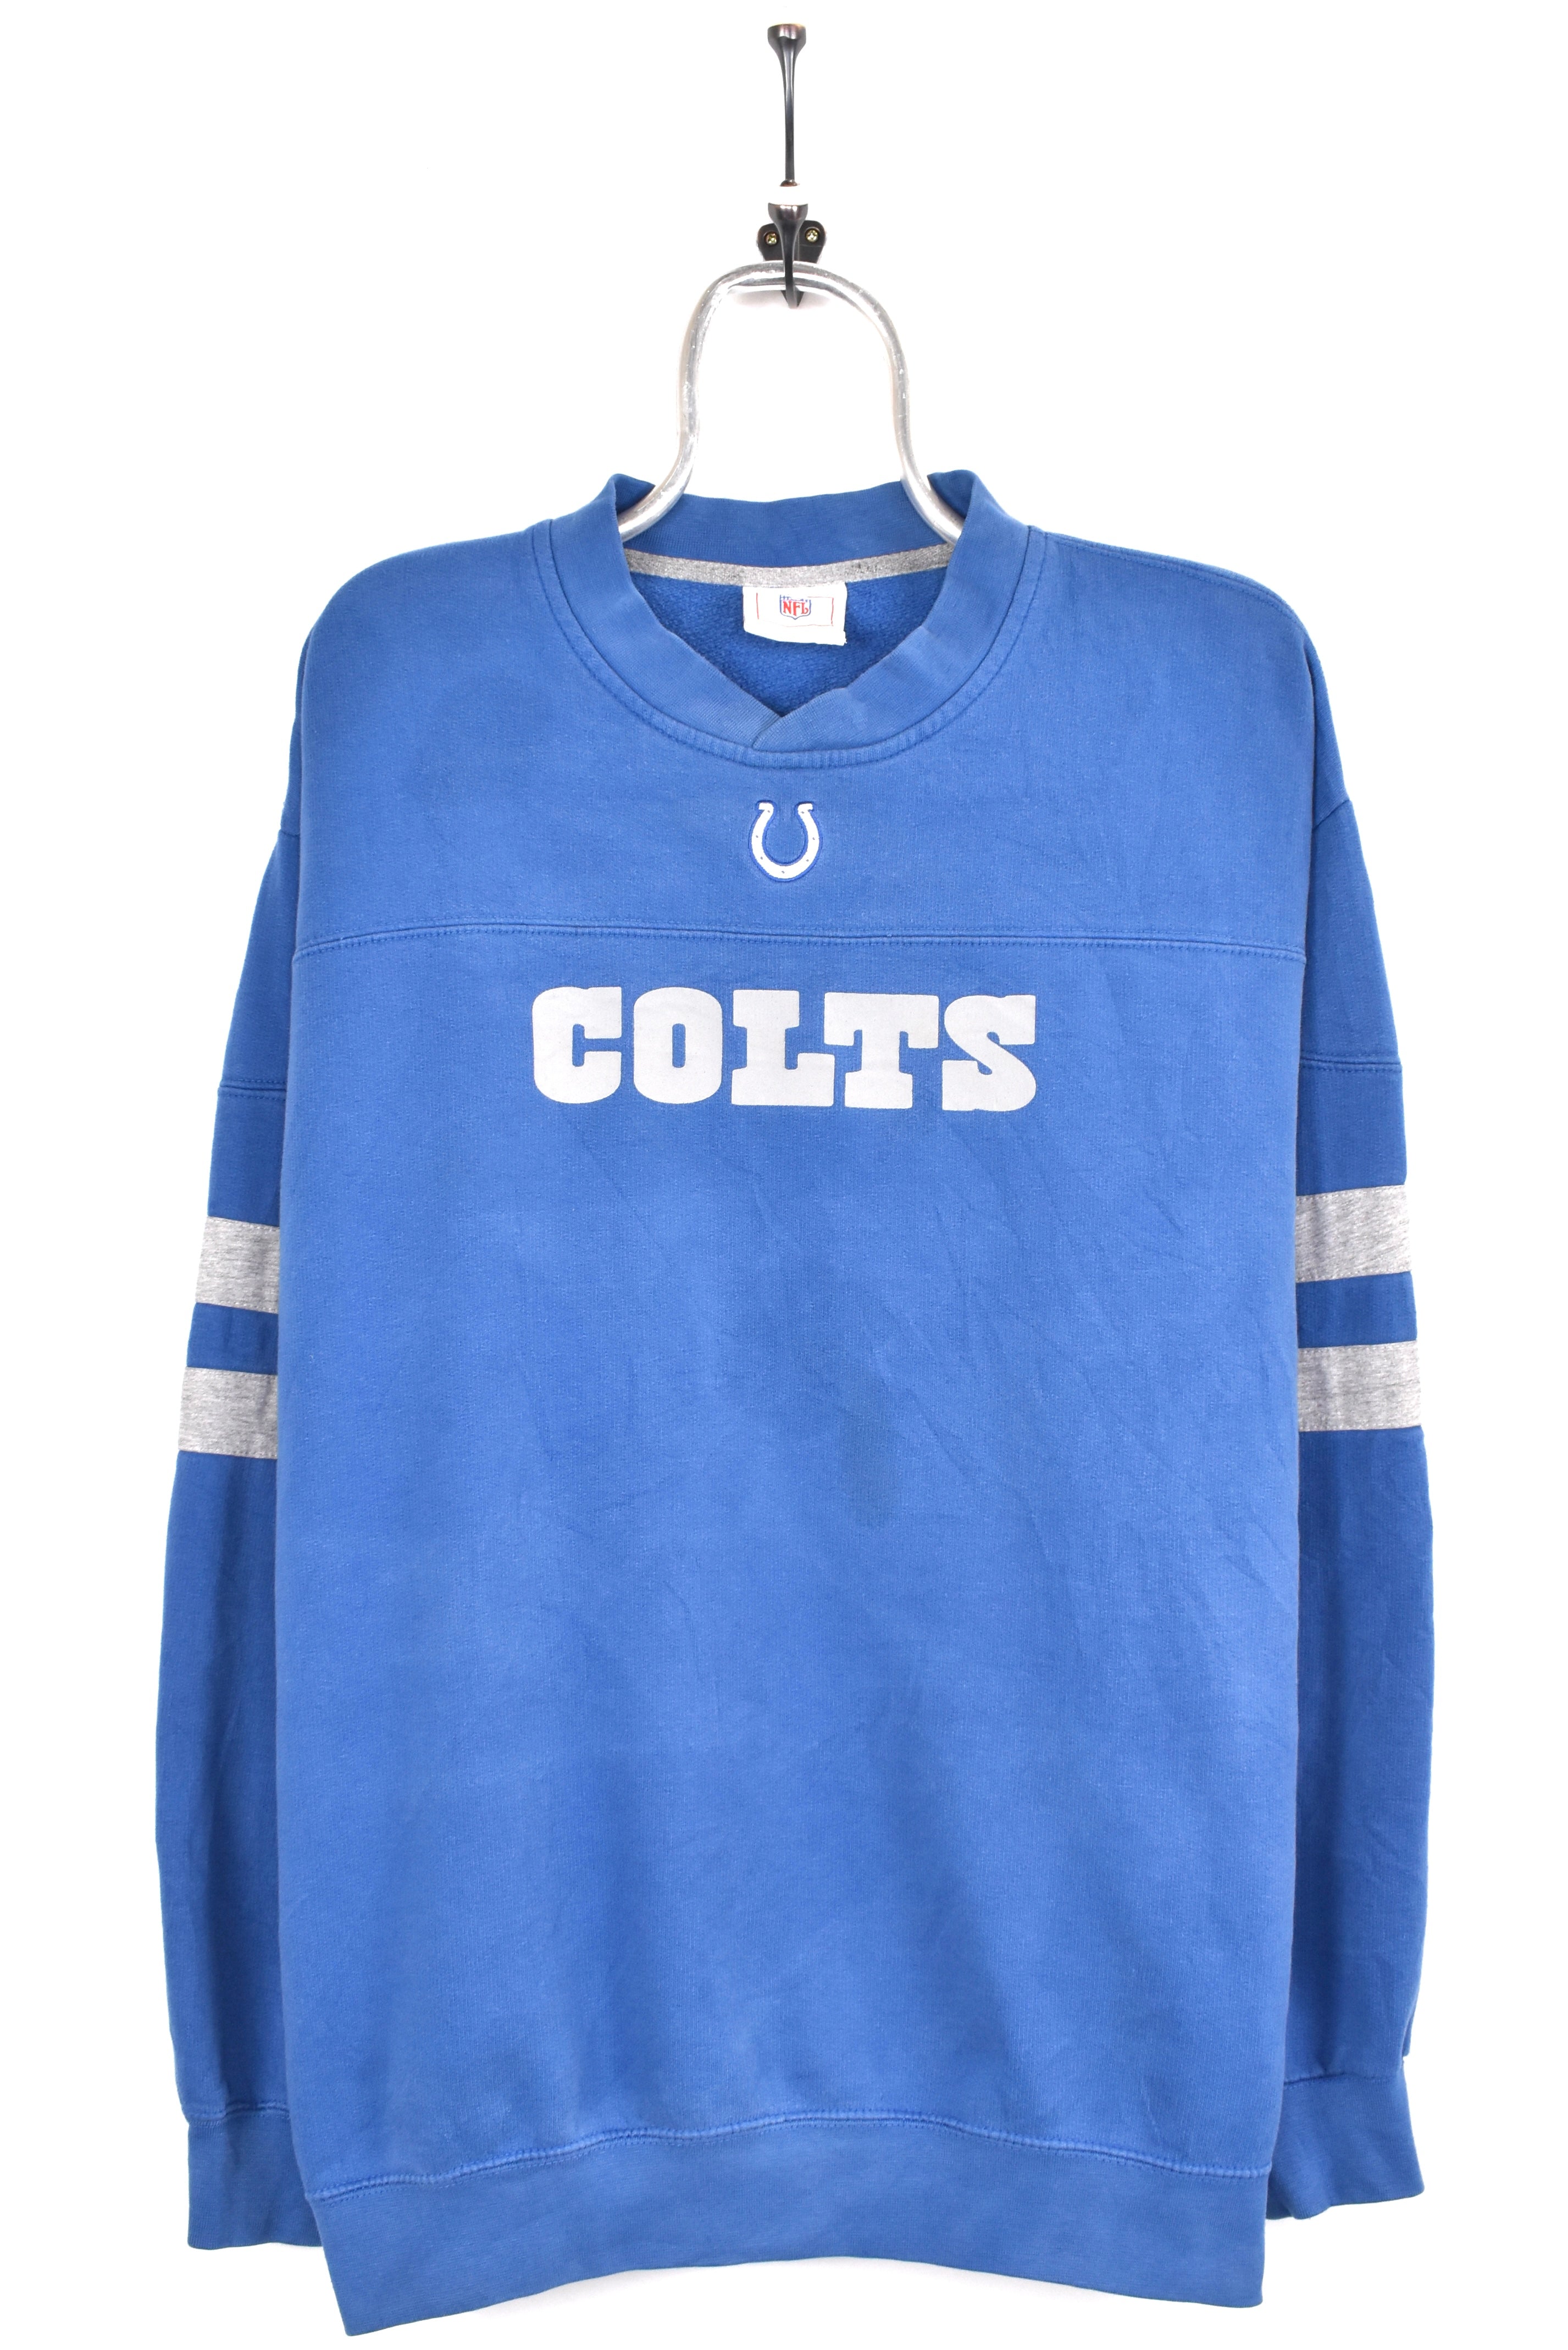 Vintage Indianapolis Colts sweatshirt, NFL blue embroidered crewneck - AU XL PRO SPORT